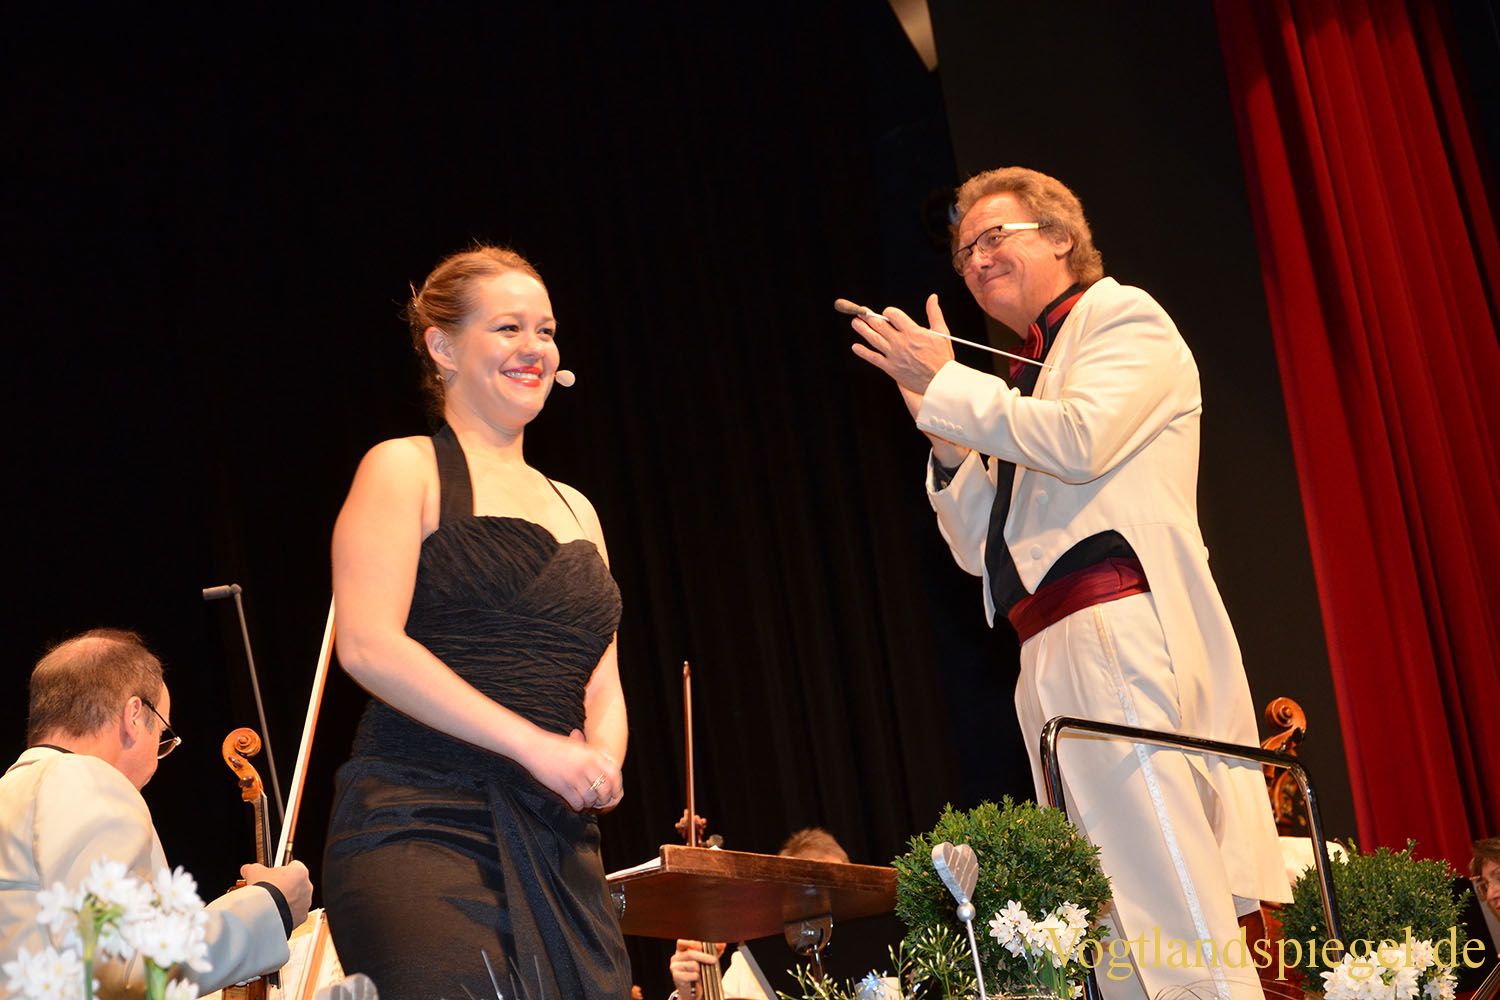 Vogtland Philharmonie begeistert mit drei ausverkauften Silvesterkonzerten